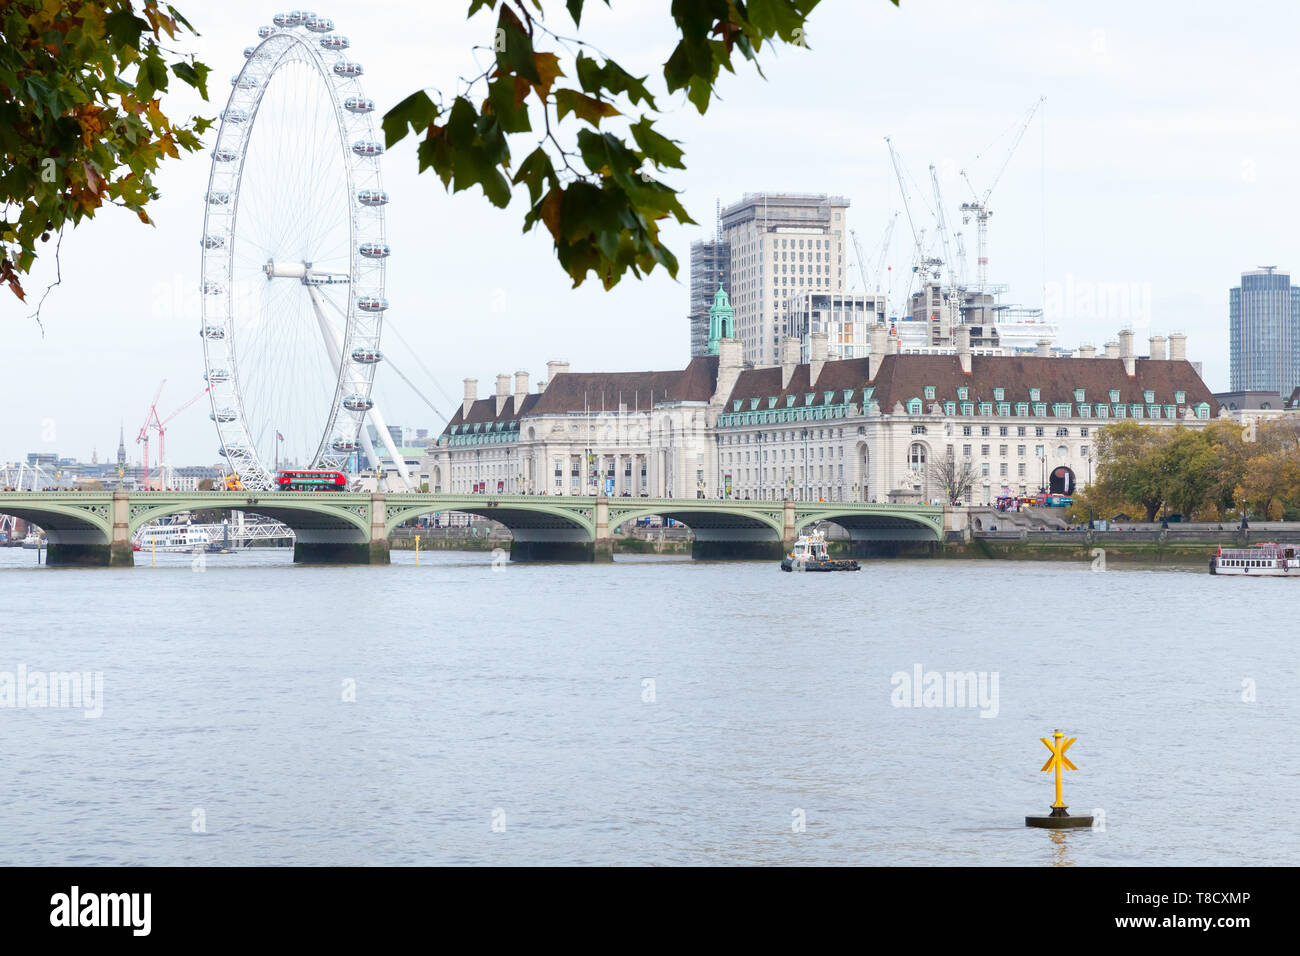 London, Großbritannien, 31. Oktober 2017: Stadtbild mit Westminster Bridge und London Eye Riesenrad am Südufer der Themse in montiert Stockfoto